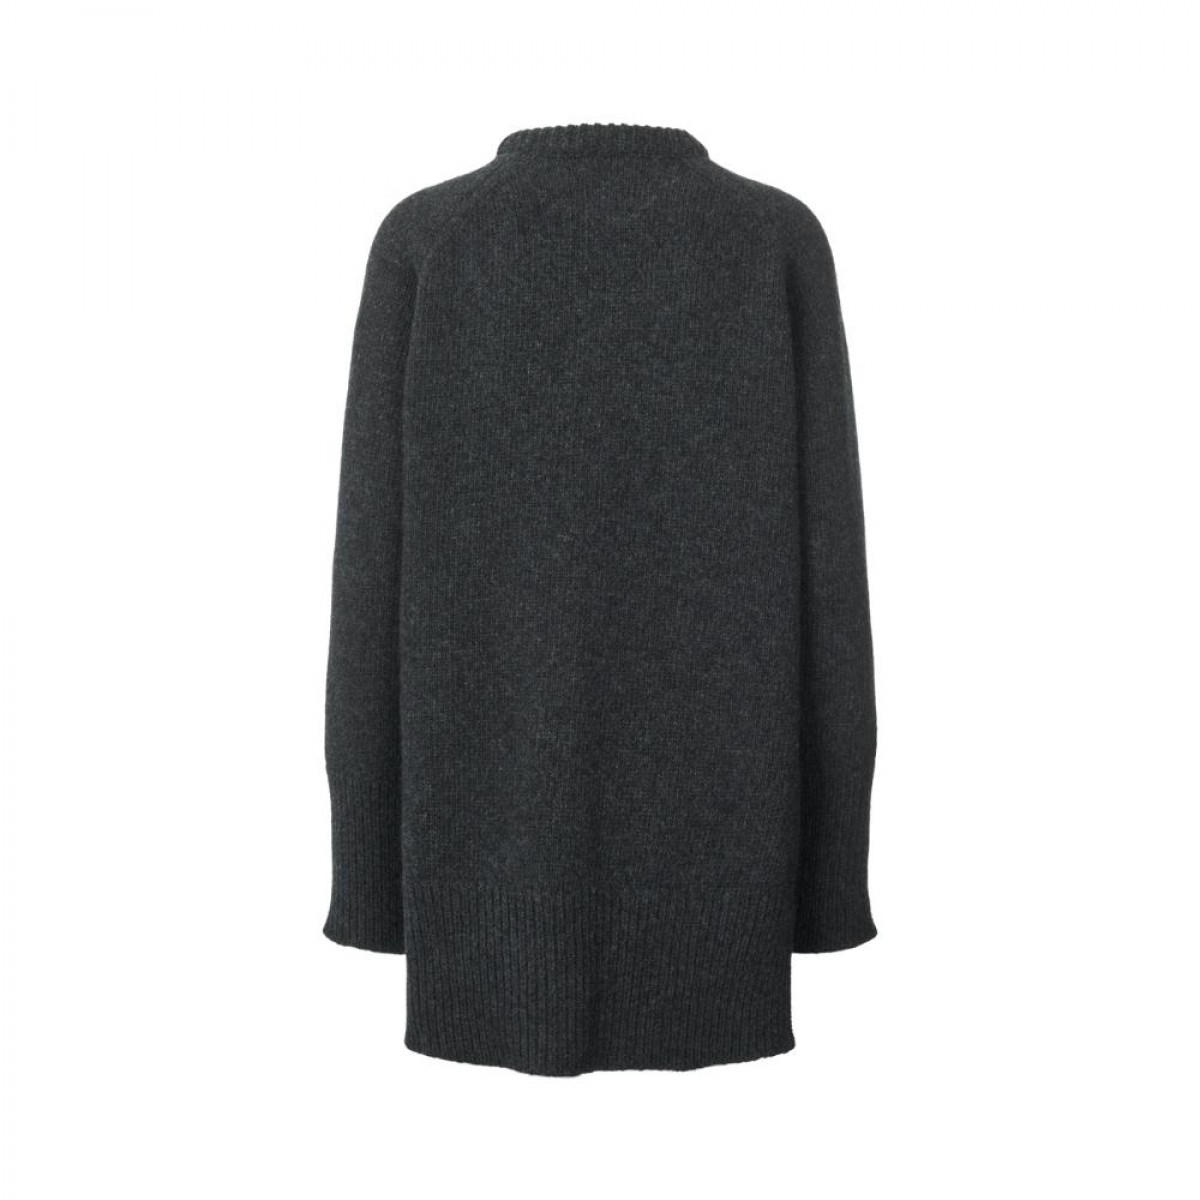 rossalina lambswool knit - dark grey - bagfra